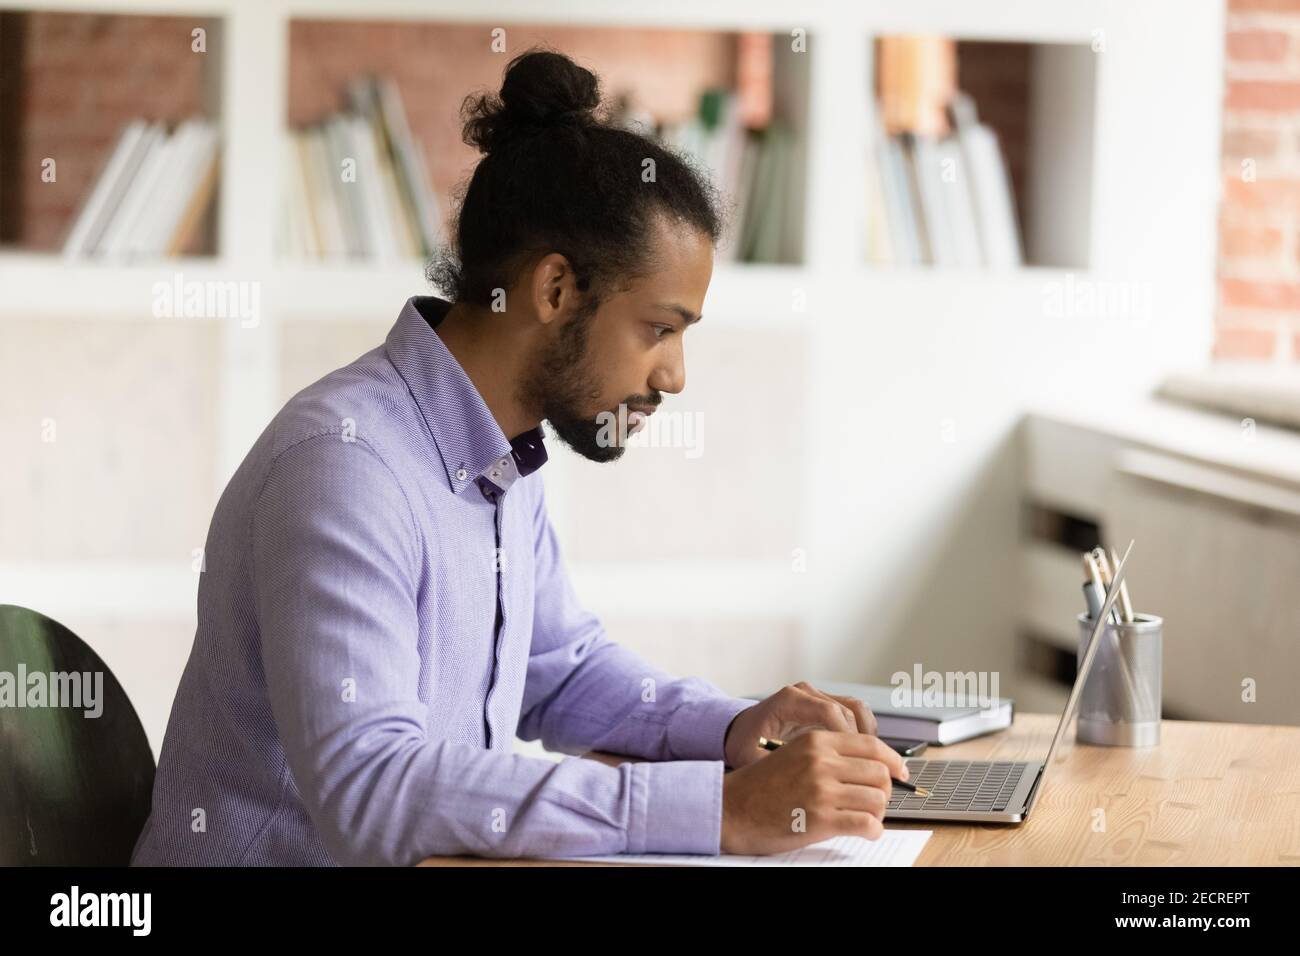 Un homme afro-américain pensif travaille sur un ordinateur portable Banque D'Images